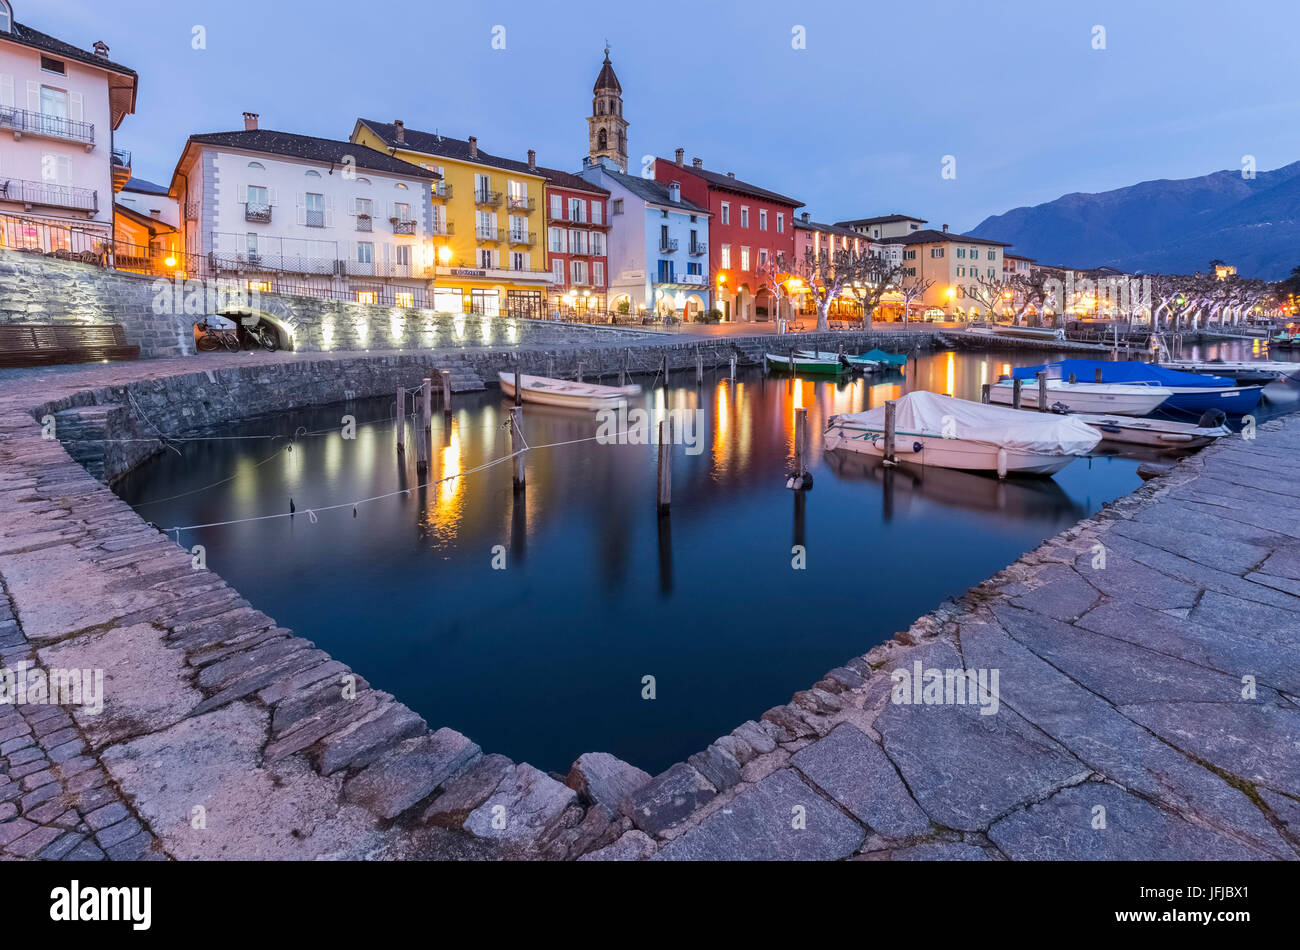 The small port of Ascona in front of Lago Maggiore, Canton Ticino, Switzerland, Stock Photo